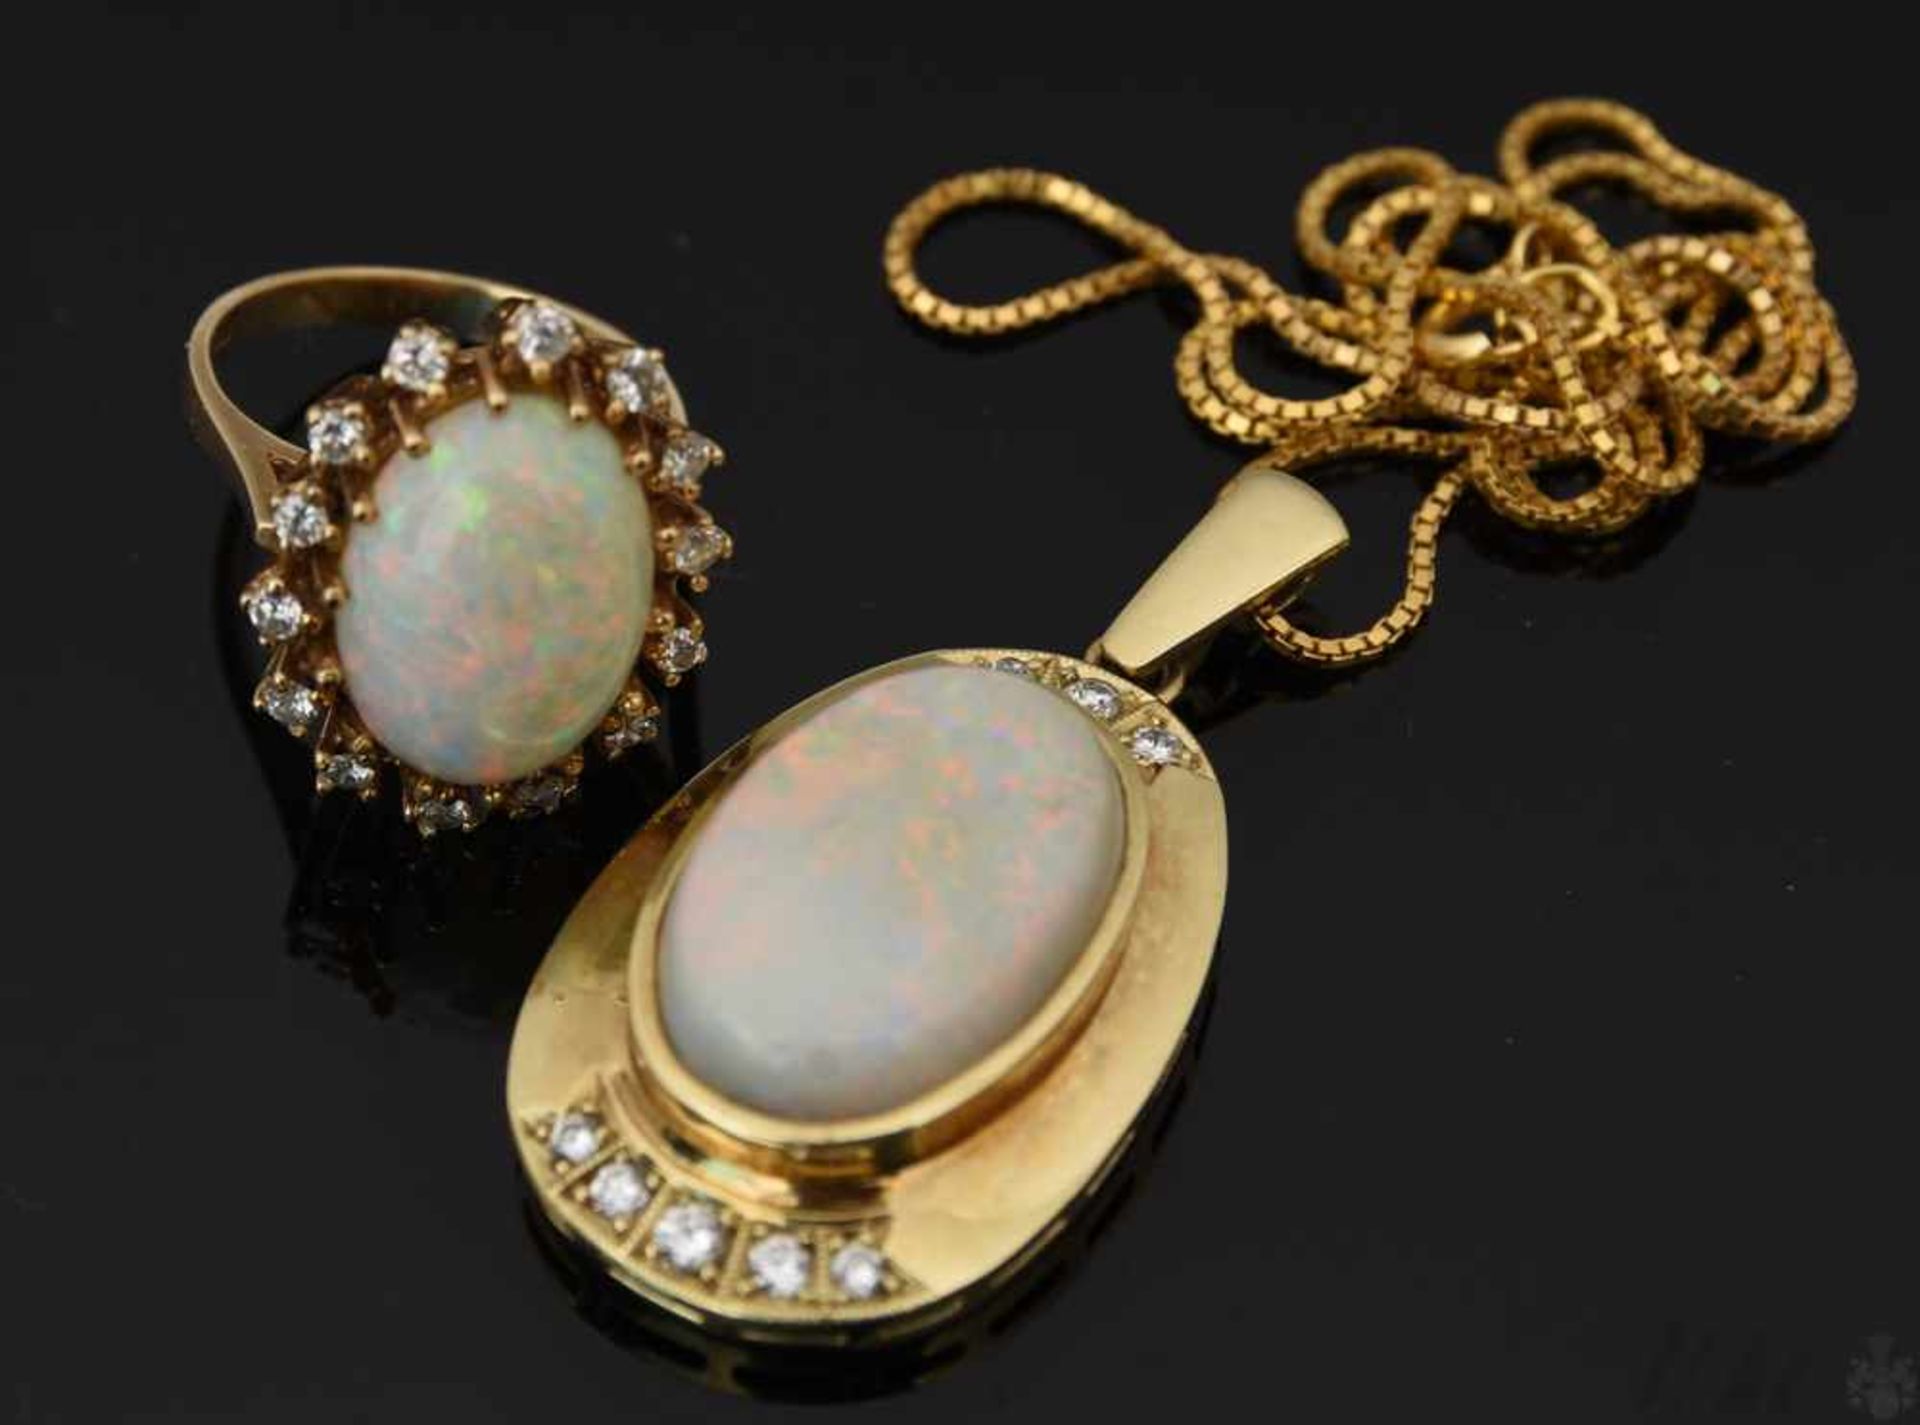 HALSKETTE MIT ANHÄNGER UND RING , mit Opalen und Brillianten.Oval geschliffene Opale mit umlaufenden - Image 8 of 9